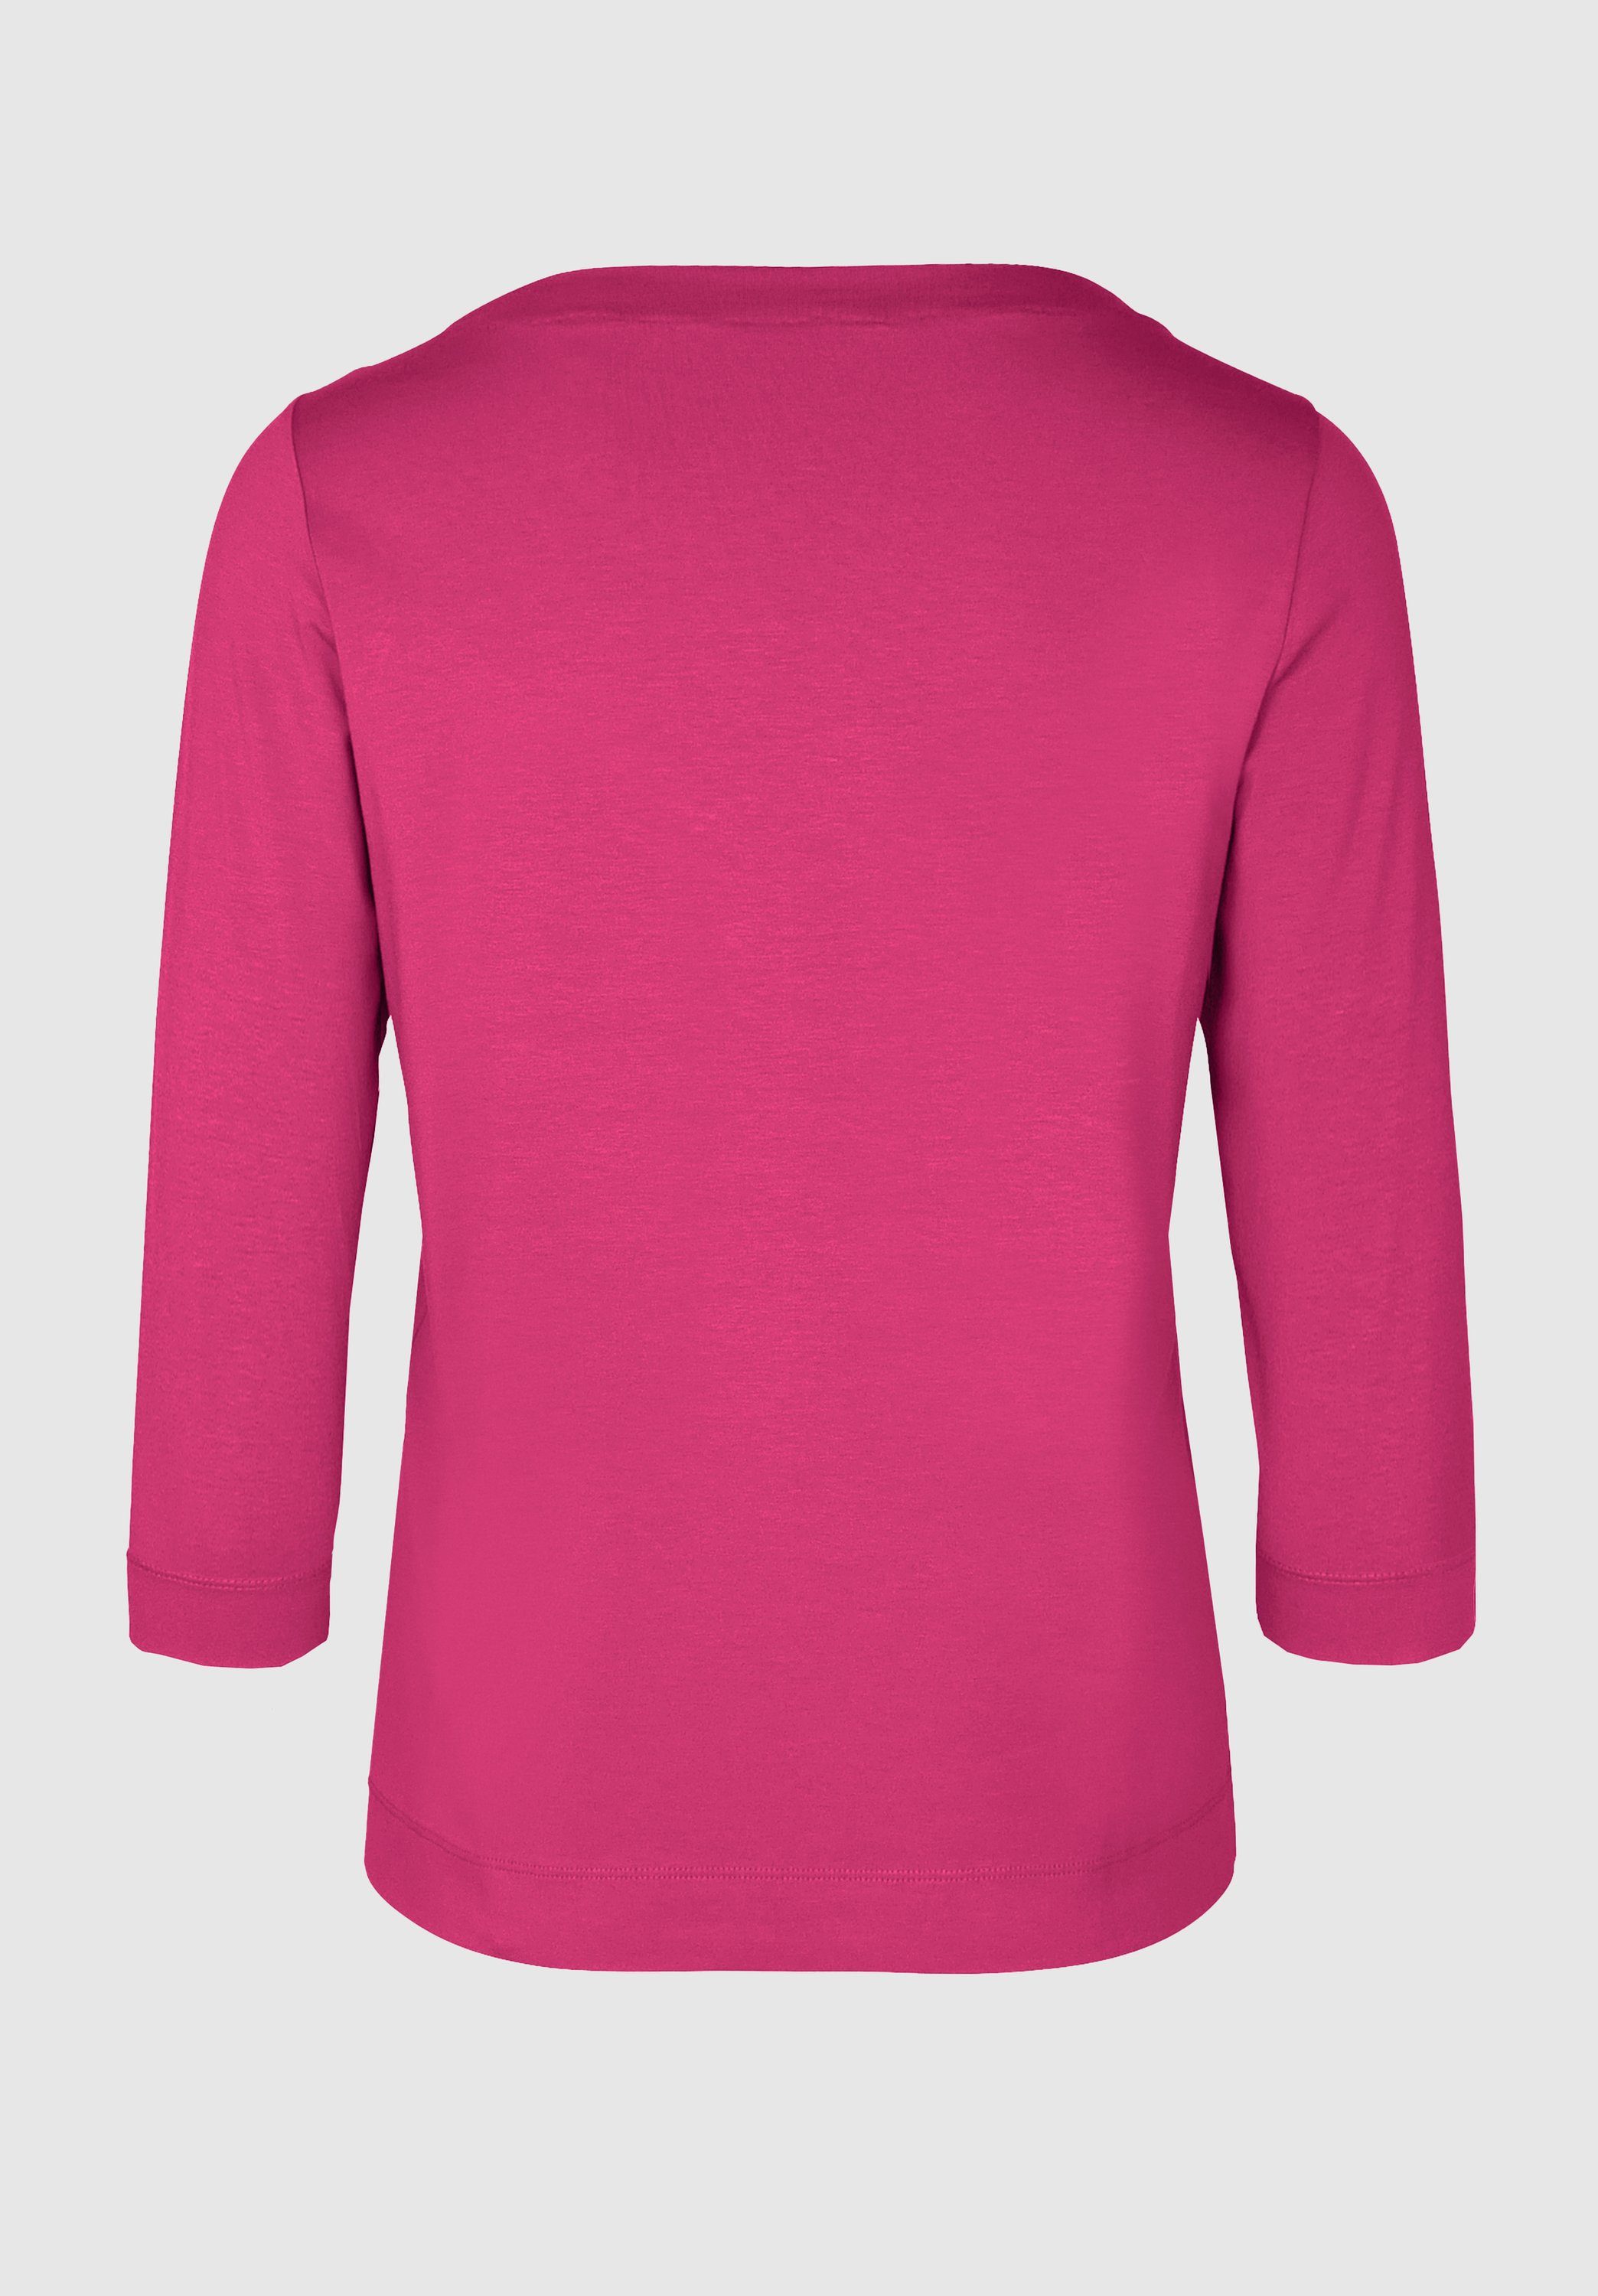 bianca angesagten in cool und pink modernem 3/4-Arm-Shirt DIELLA Trendfarben Look